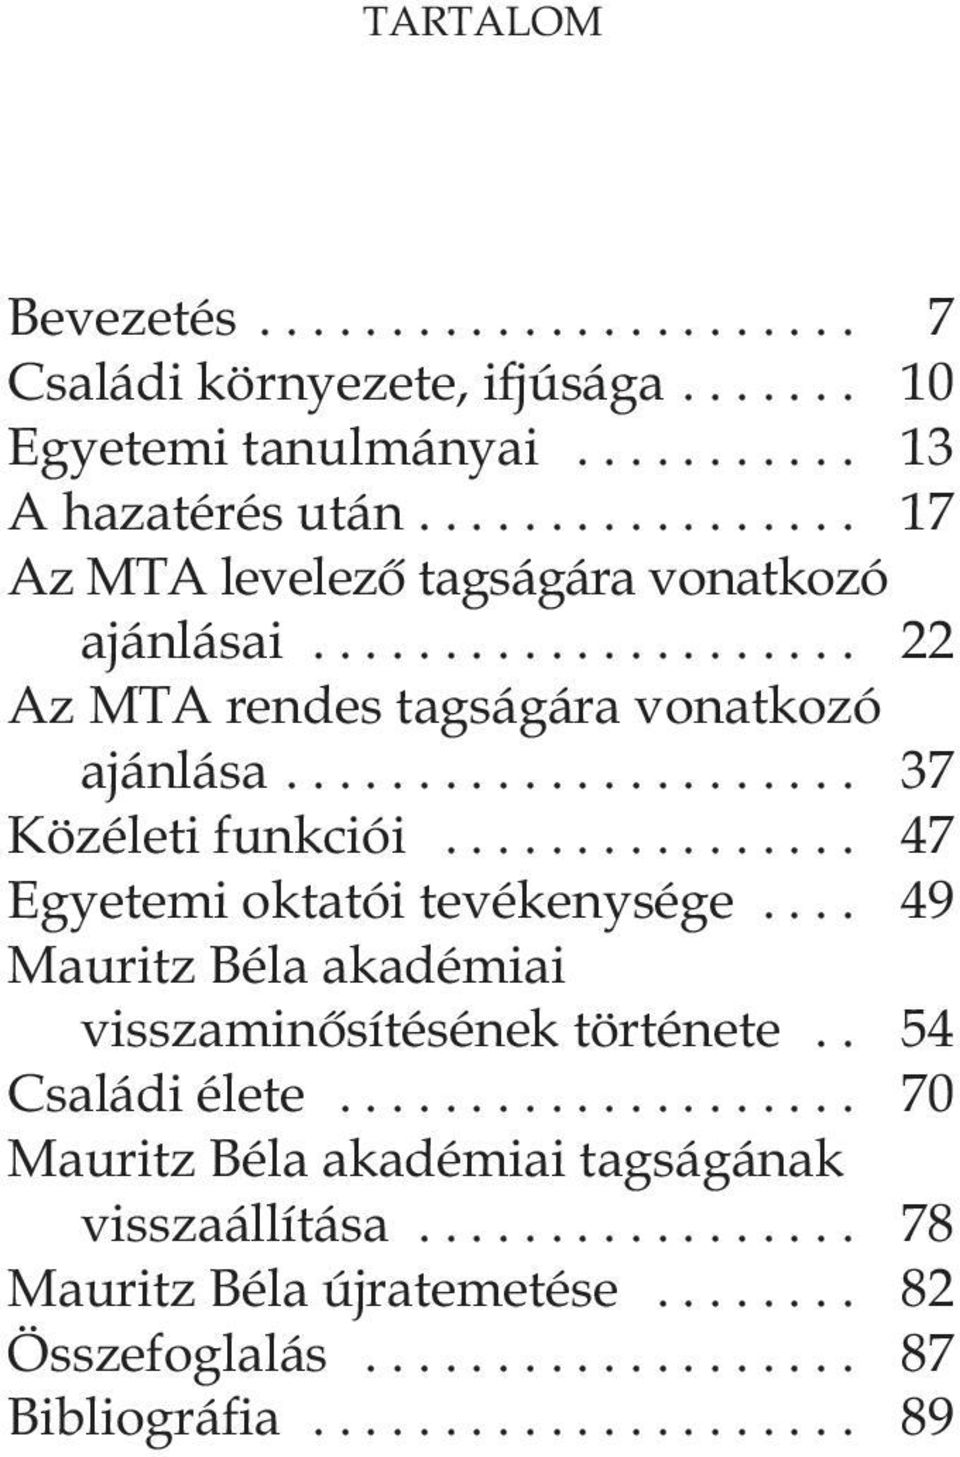 .. 37 Közéleti funkciói... 47 Egyetemi oktatói tevékenysége... 49 Mauritz Béla akadémiai visszaminôsítésének története.